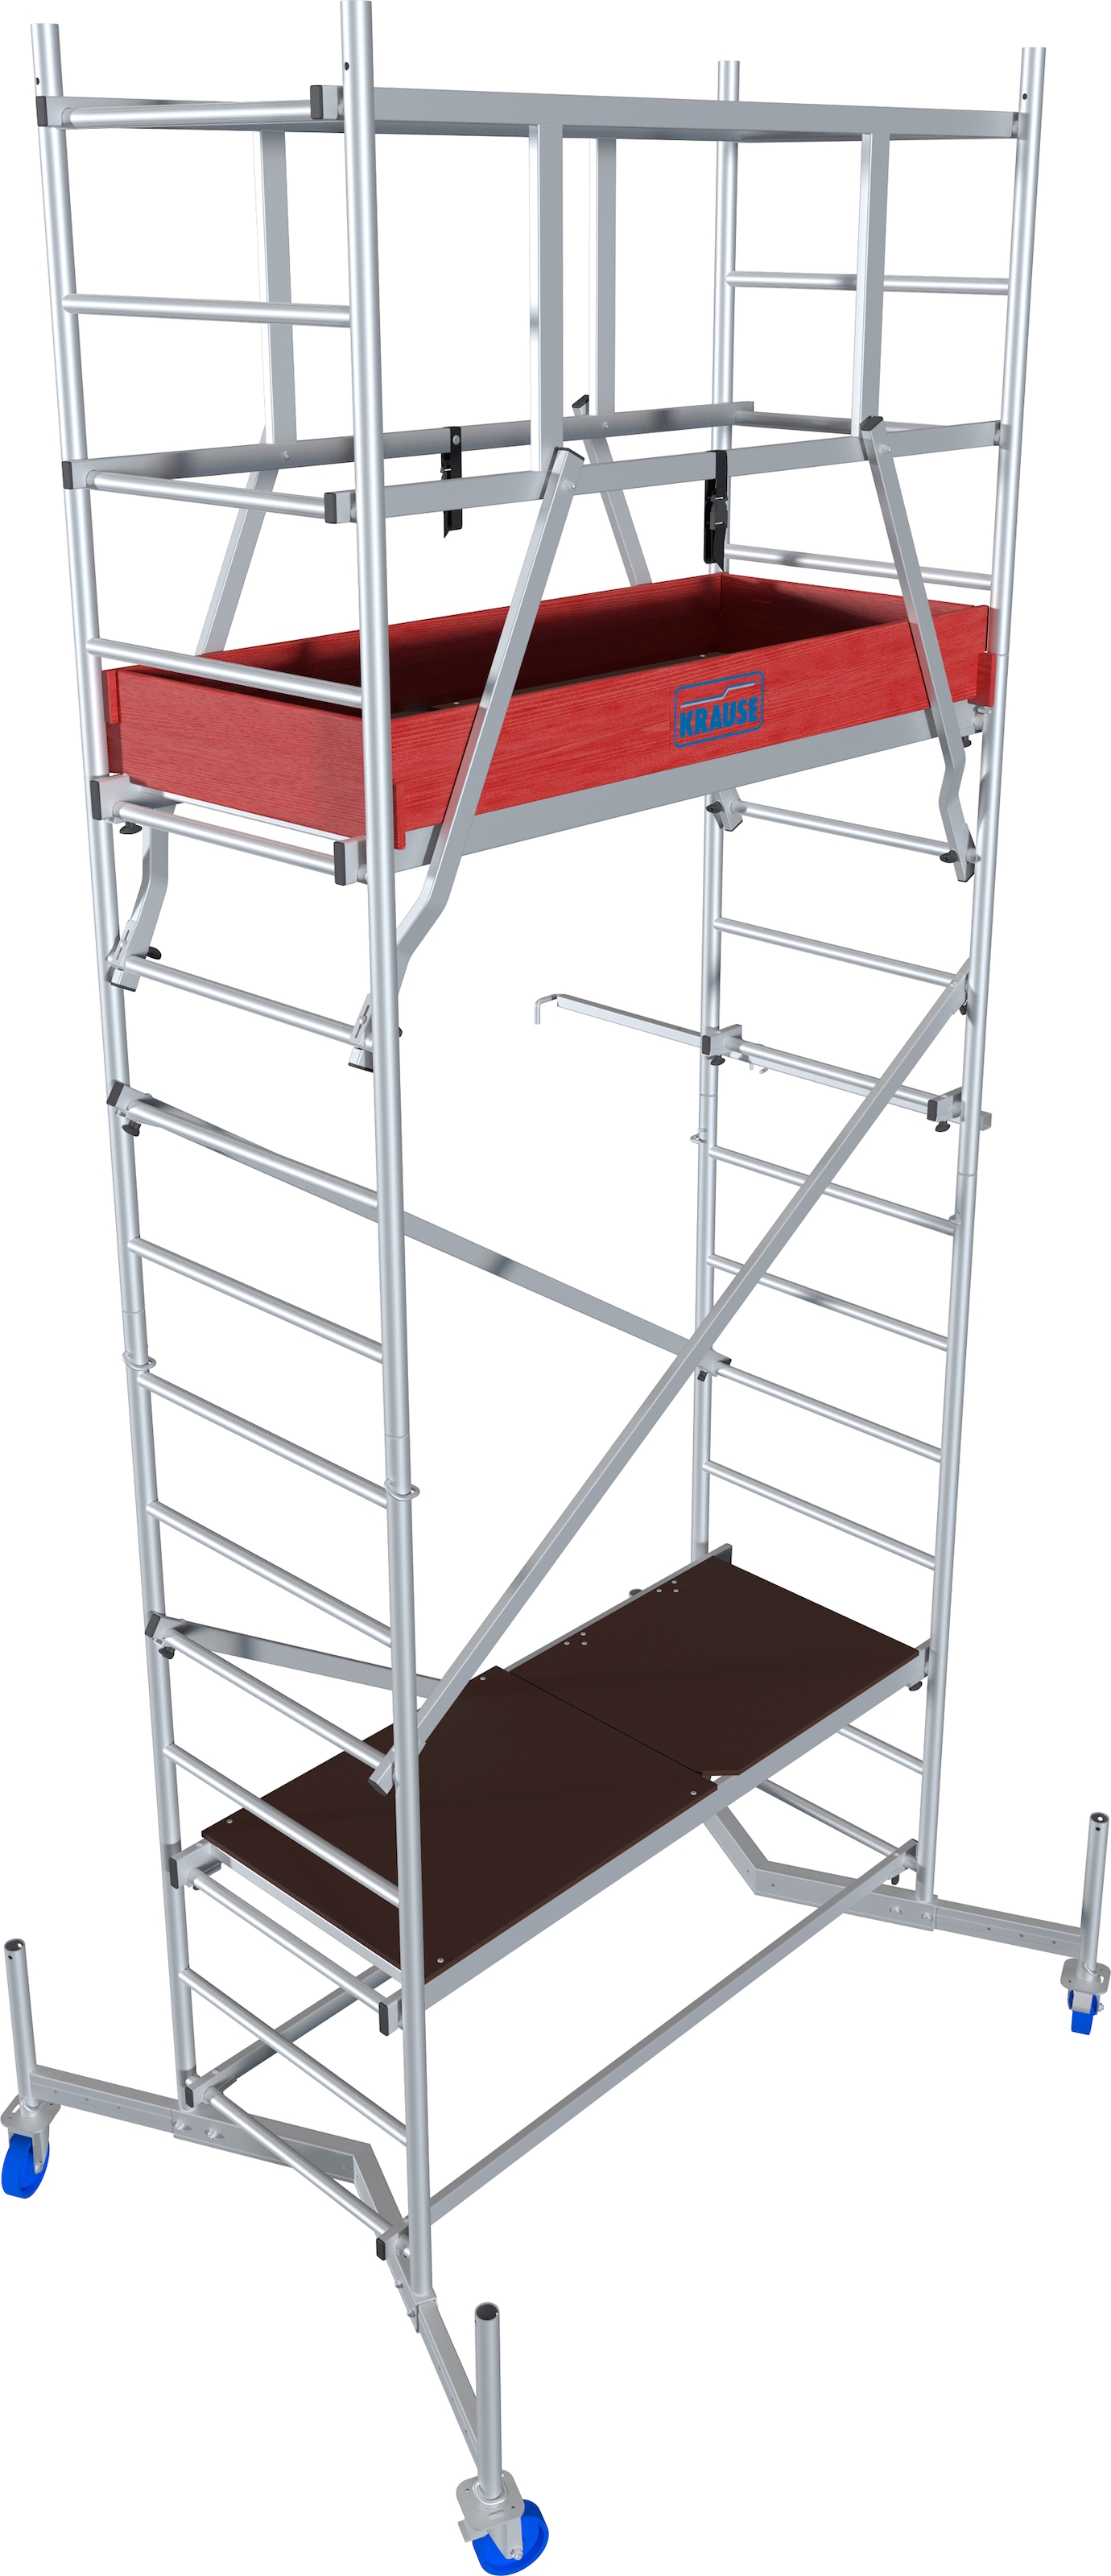 KRAUSE Arbeitsgerüst »ClimTec System«, Komplettgerüst, inkl. 1 Aufstockung und Fahrrollensatz 125 mm